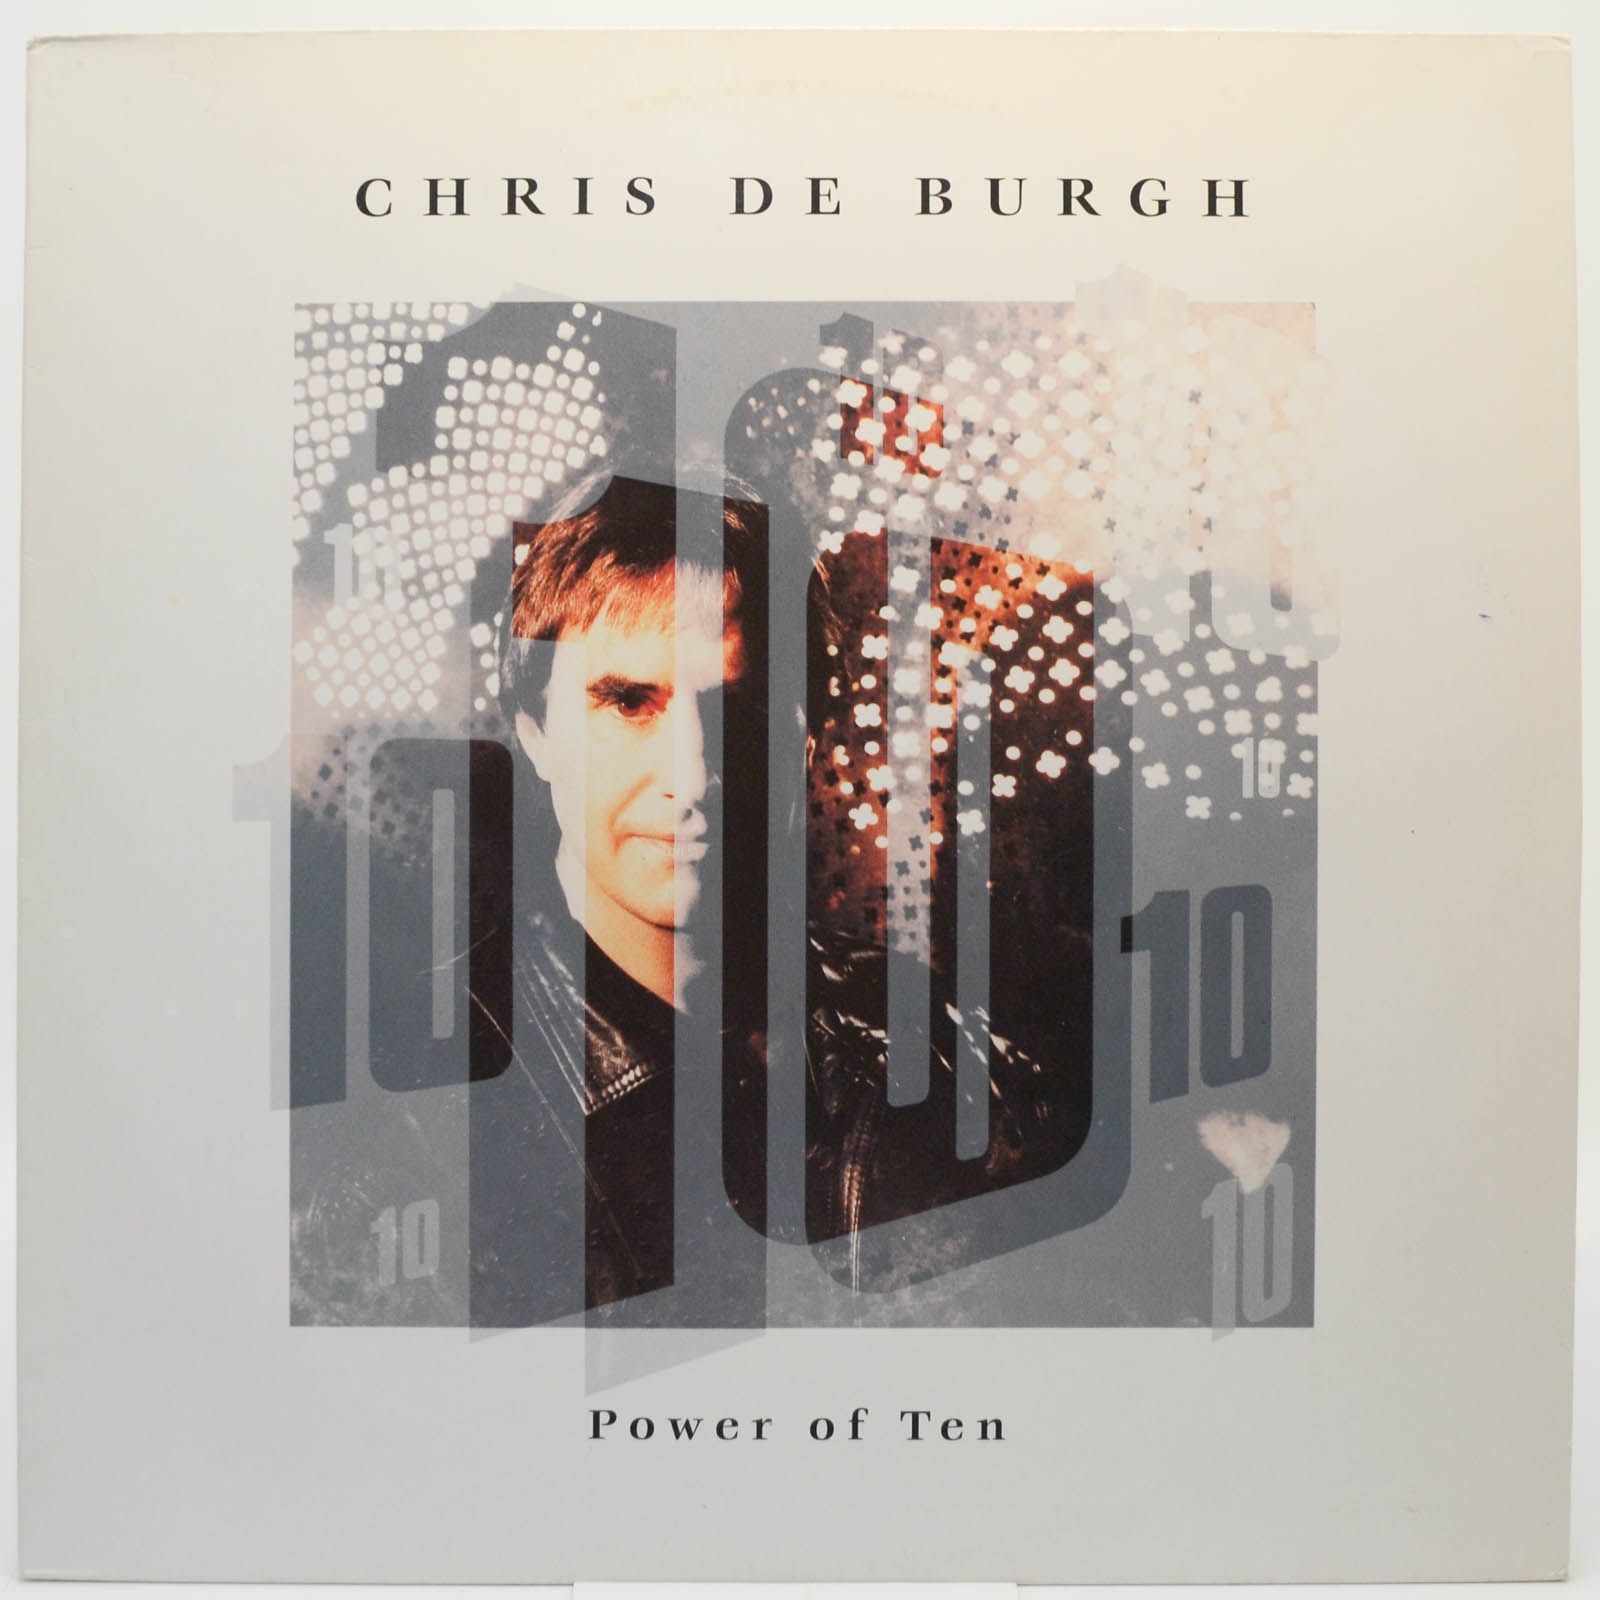 Chris de Burgh — Power Of Ten, 1992